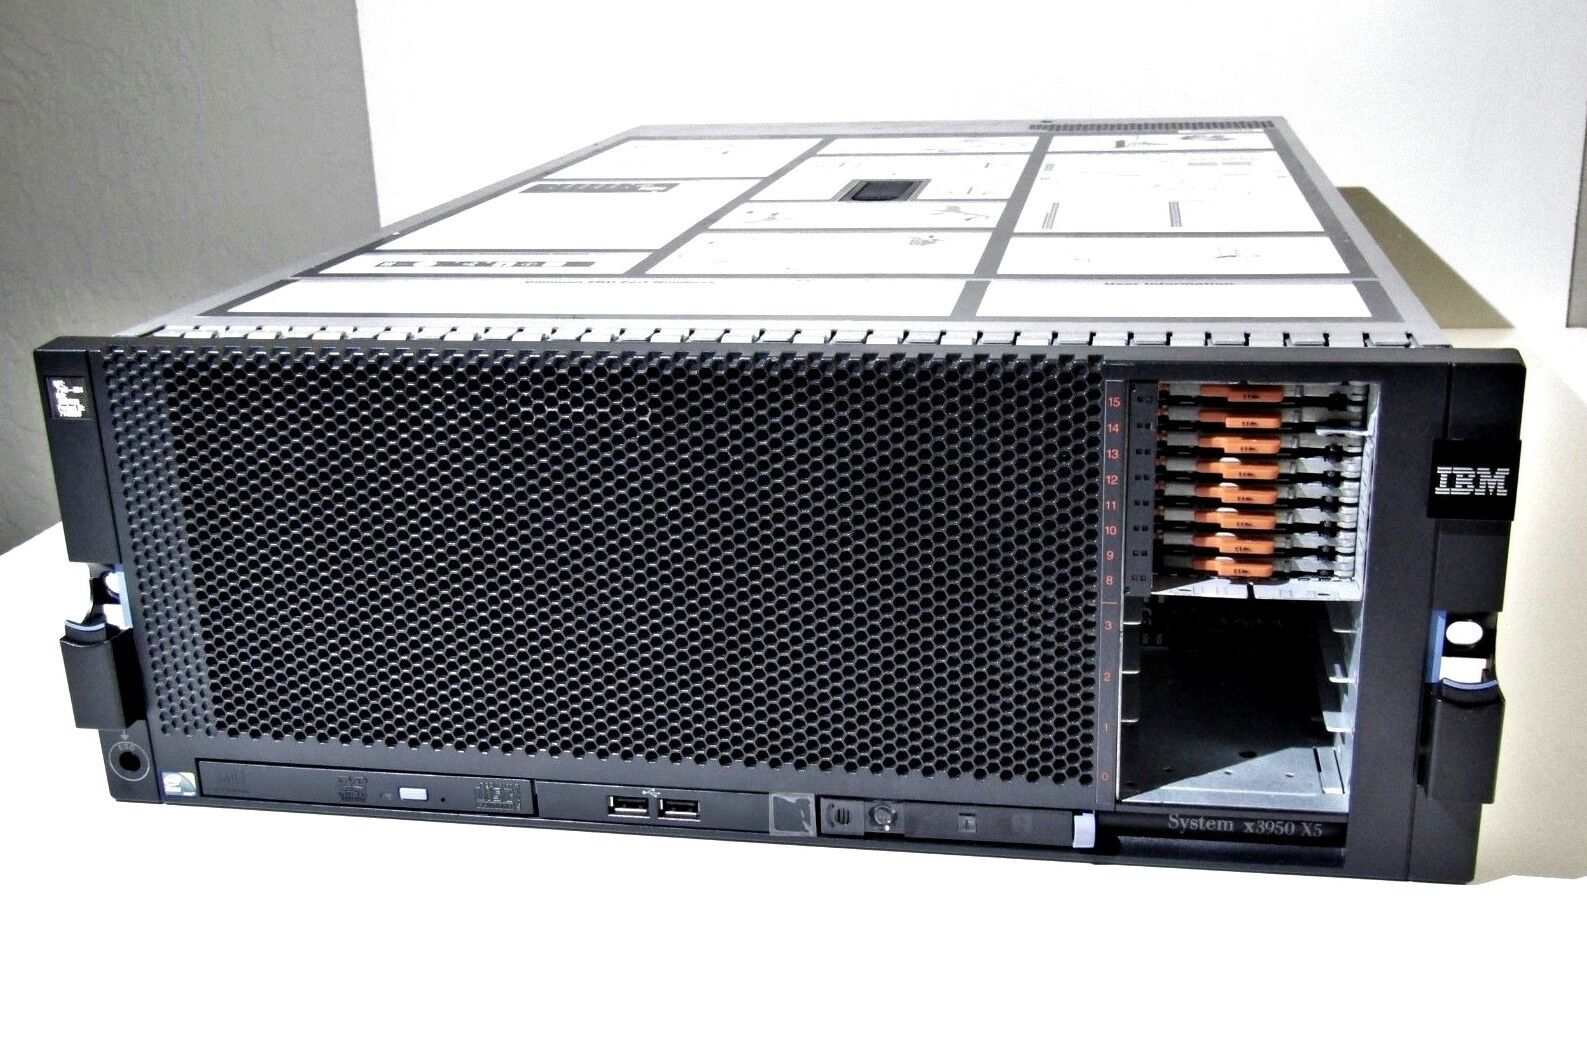 IBM 7145-AC4 SYSTEM x3950 X5 4-CPU XEON X7560 2.27GHz 256GB RAM - NO HDD